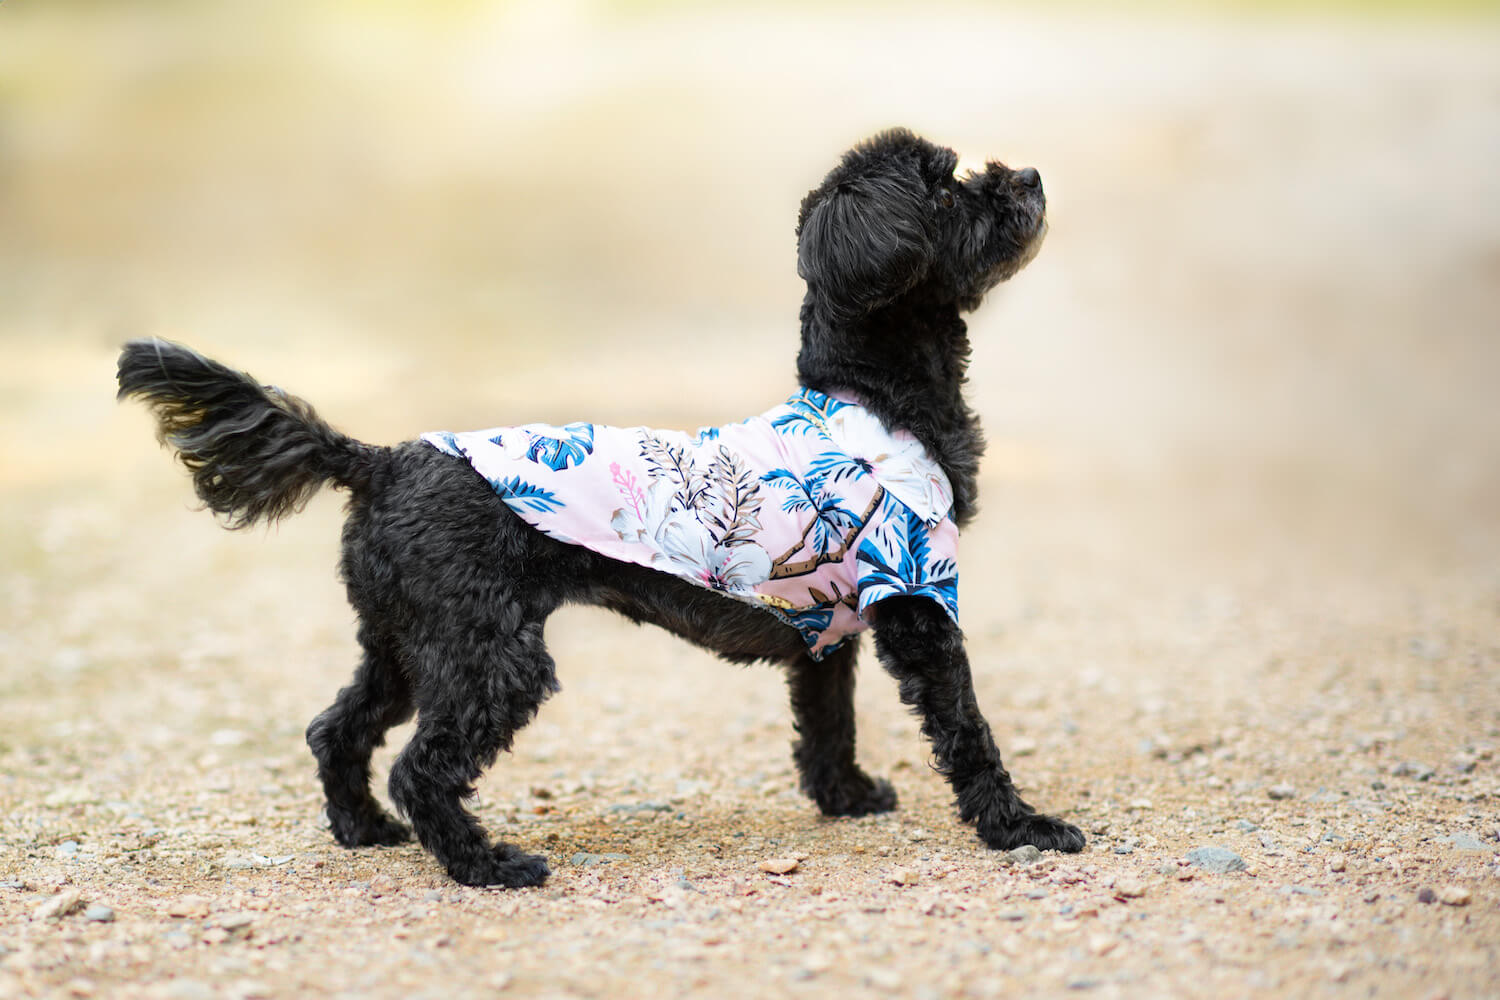 Vsepropejska Zyra plážová košile pro psa Barva: Růžová, Délka zad (cm): 29, Obvod hrudníku: 34 - 36 cm